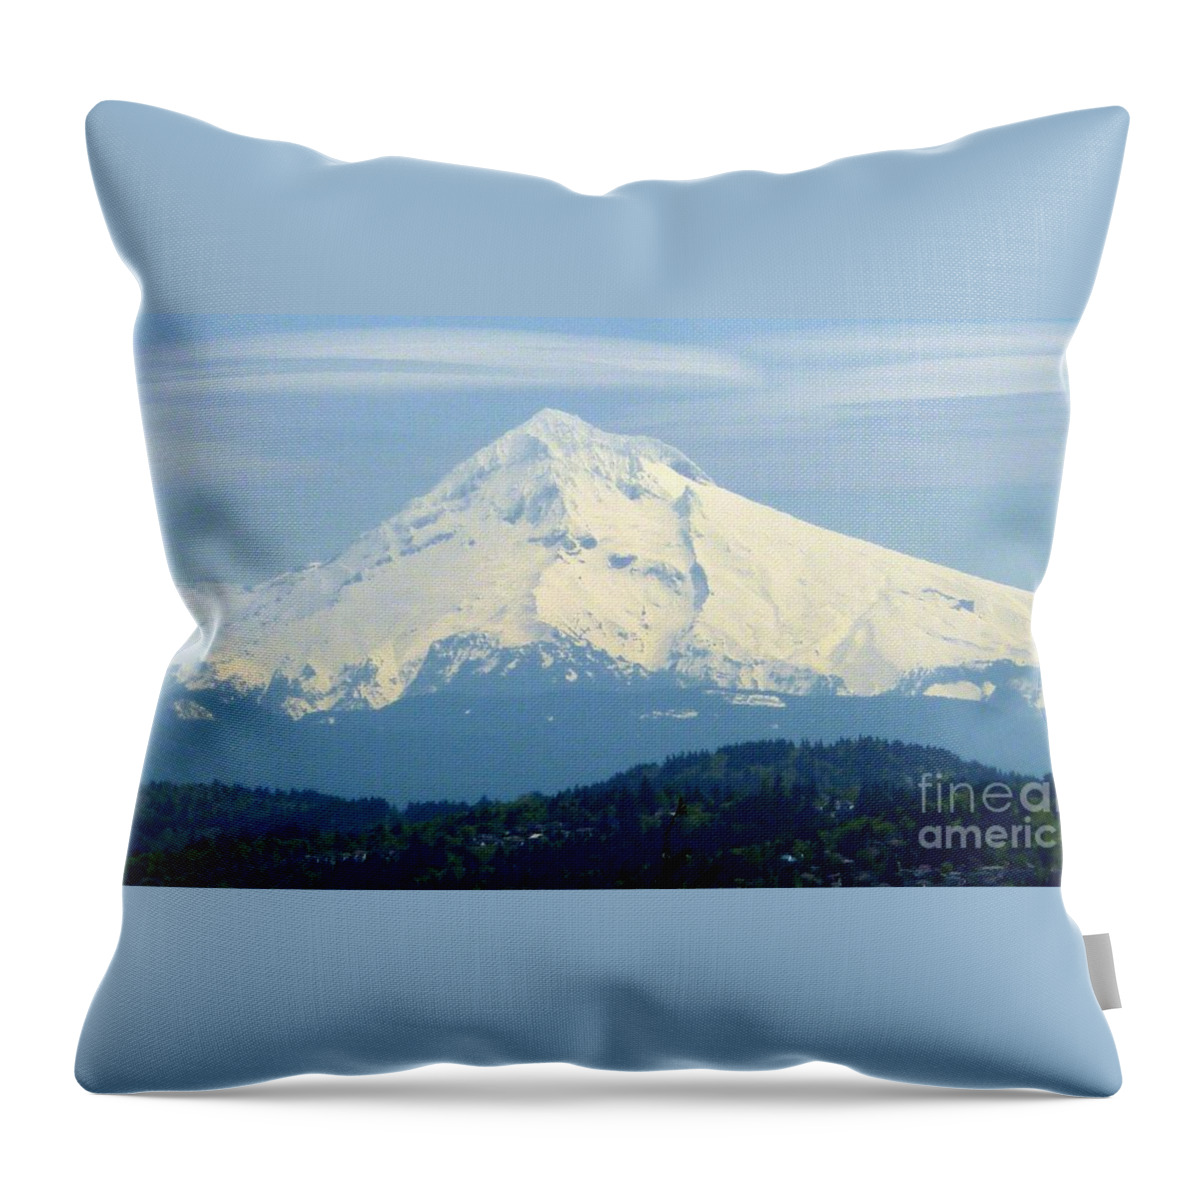 Mount Hood Throw Pillow featuring the photograph Mount Hood by Susan Garren